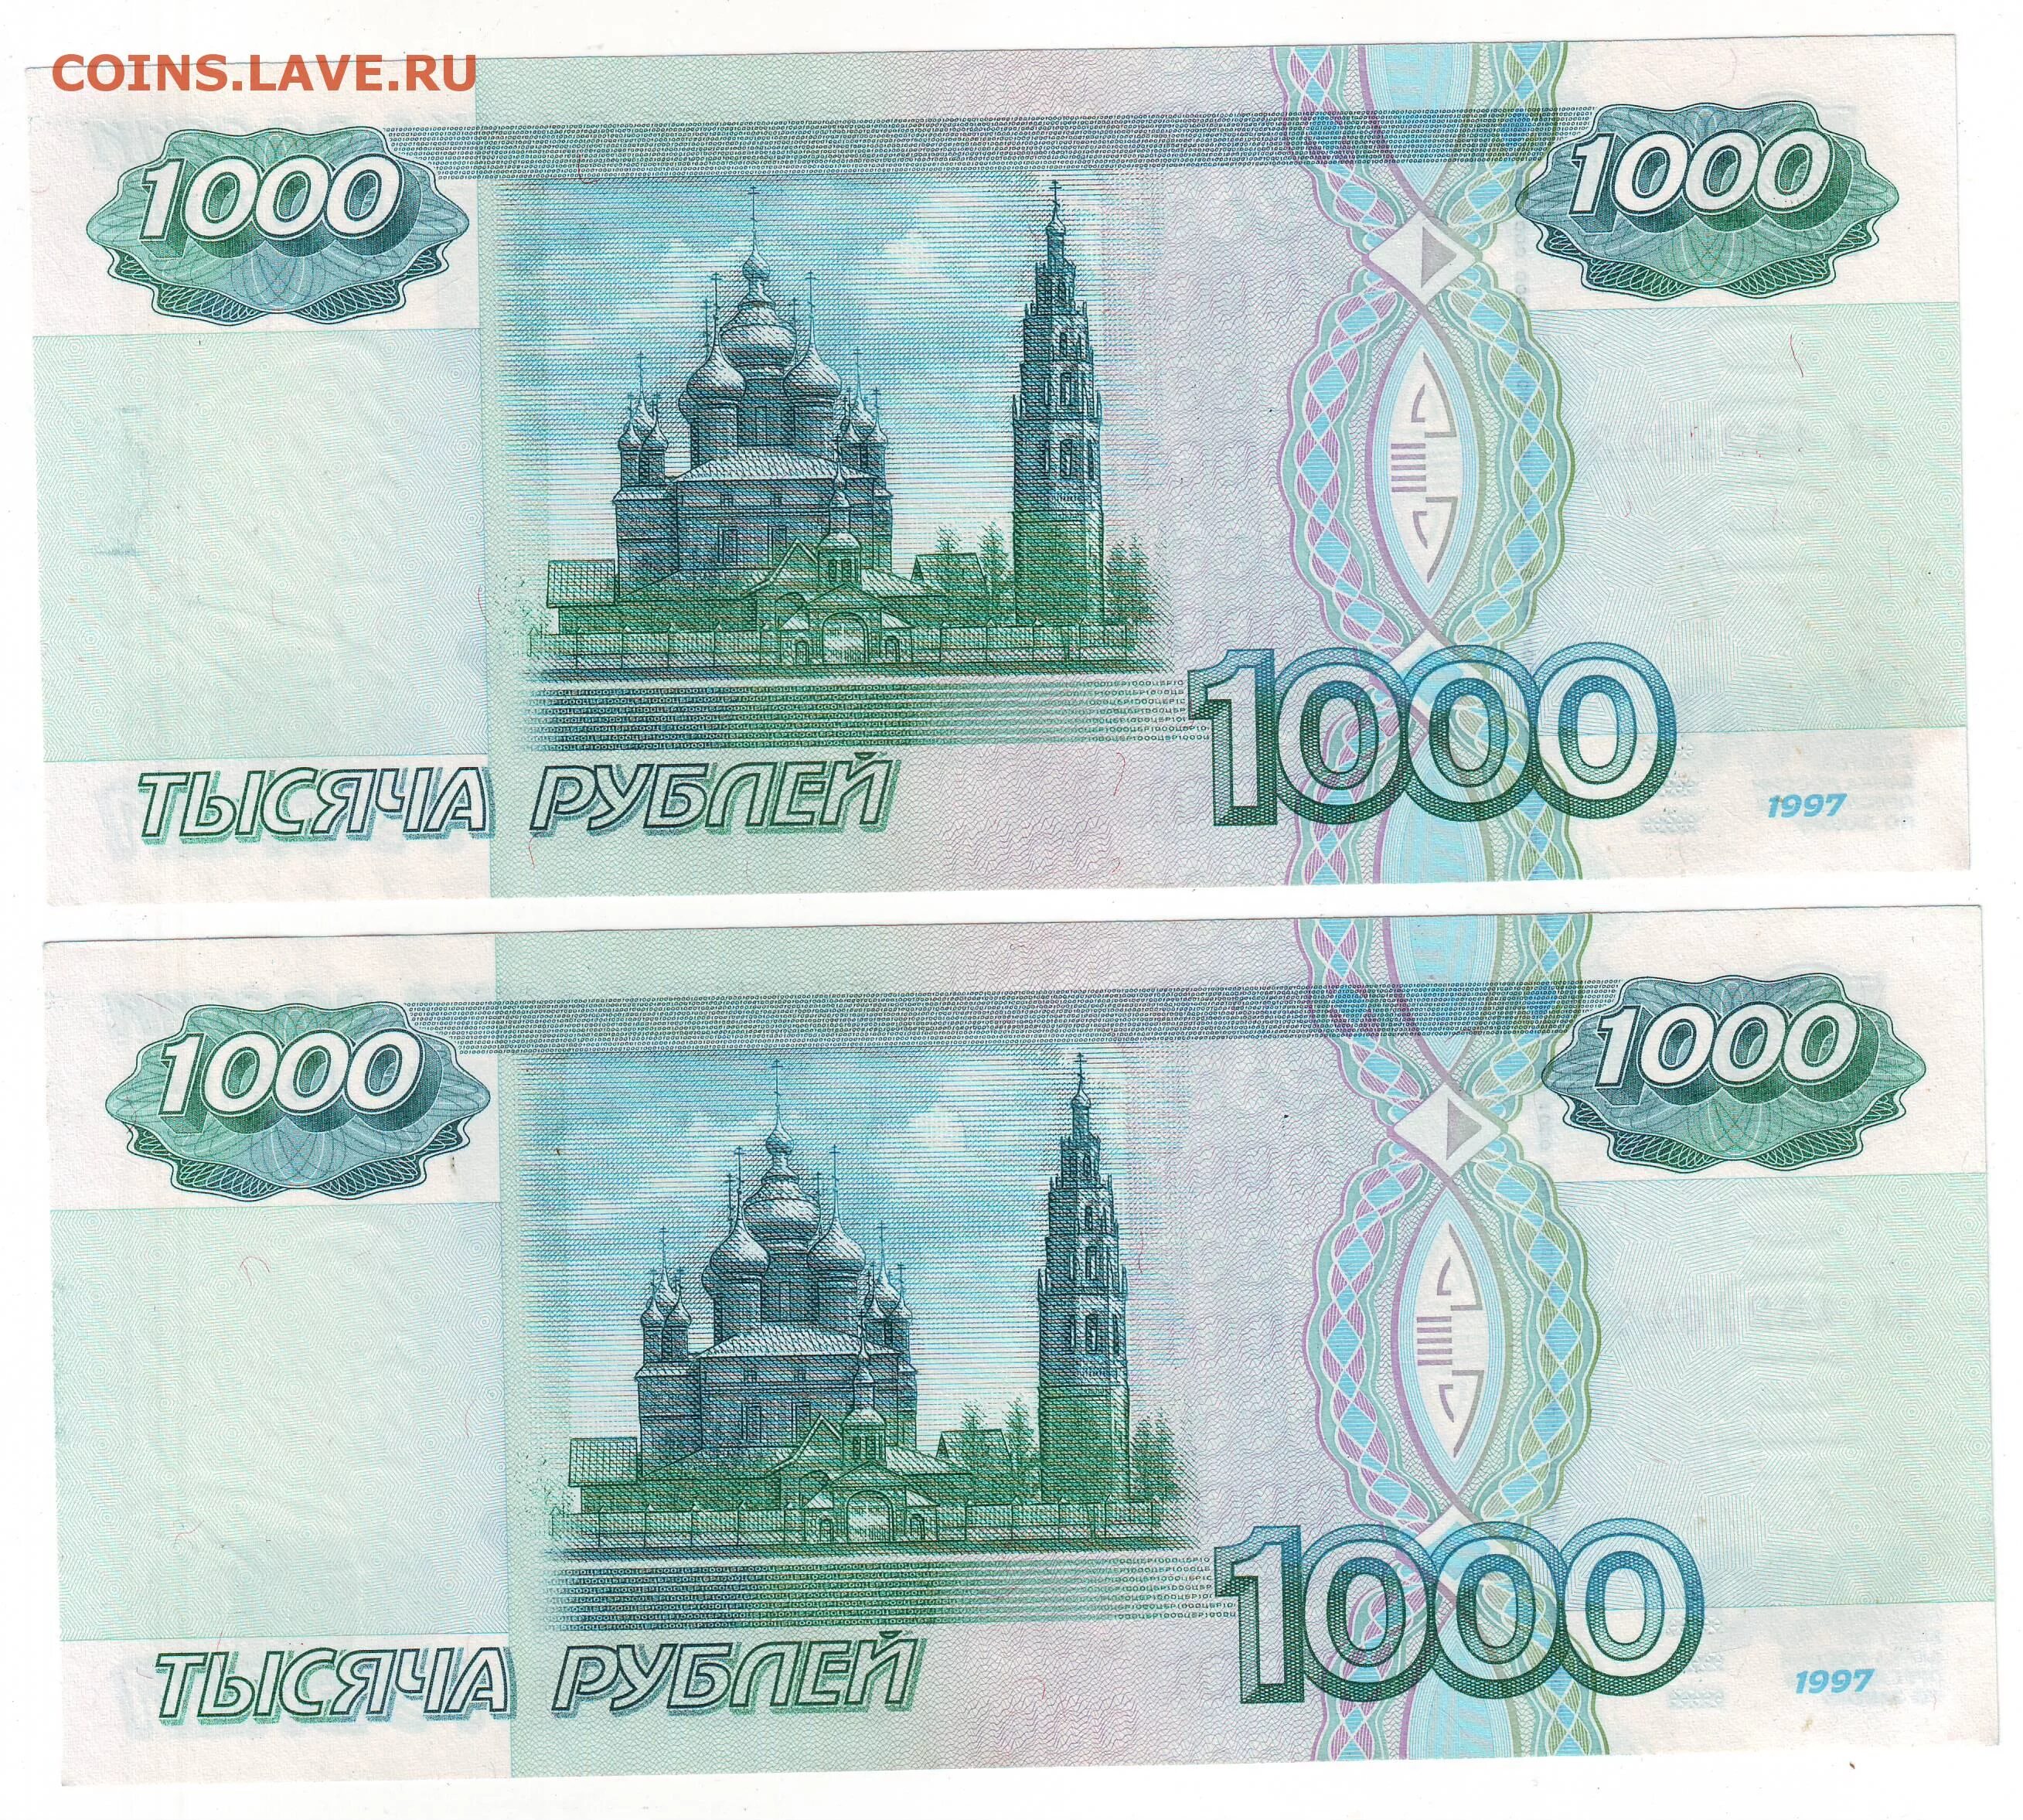 Деньги 2 стороны. 1000 Рублей купюра для печати. 1000 Рублей печать. Тысяча рублей для печати. 1000 Рублей с 2 сторон.